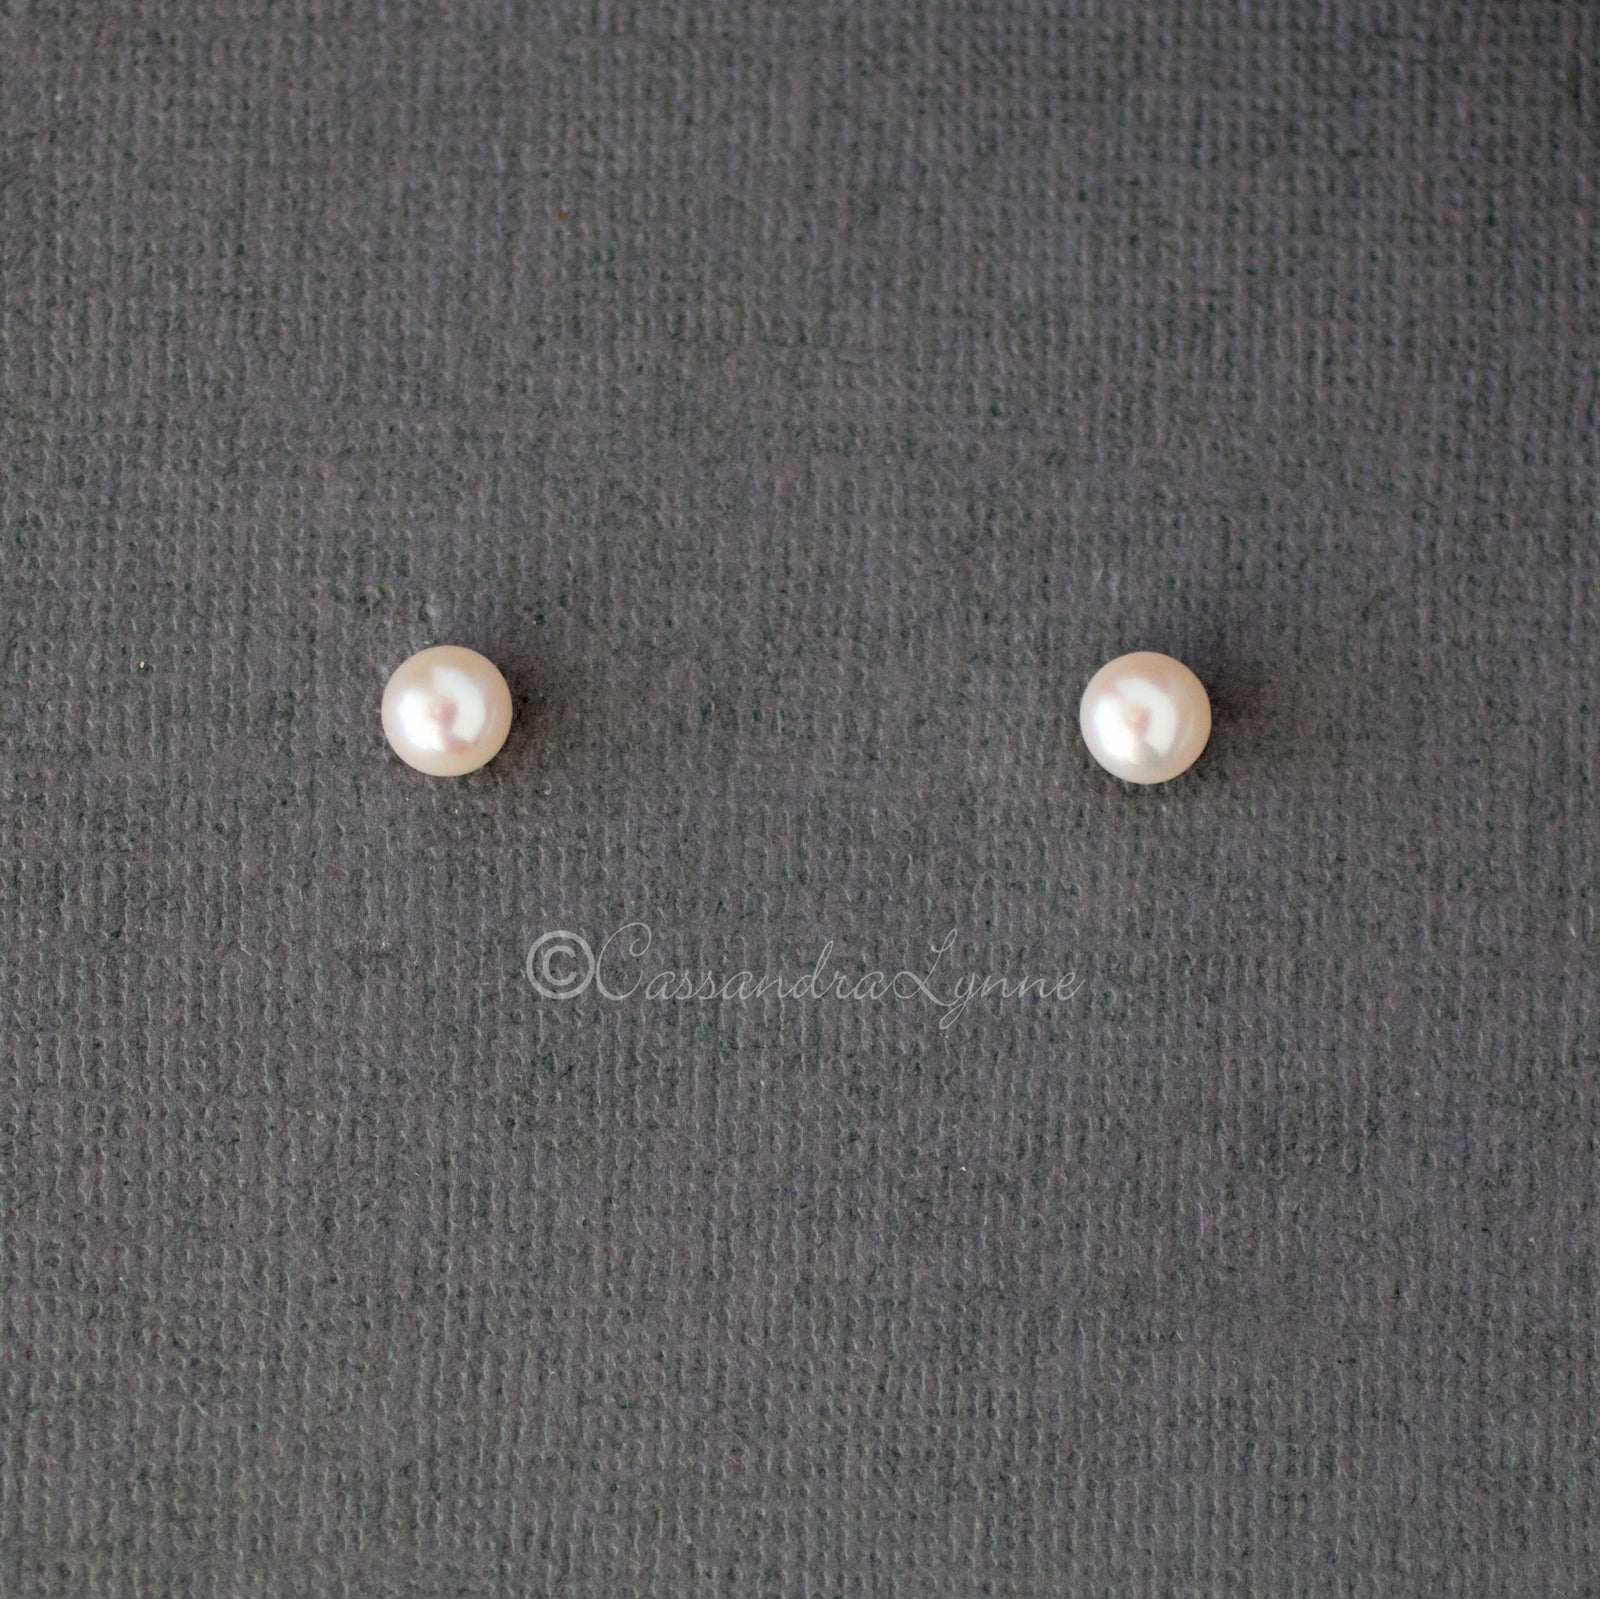 6MM Freshwater Pearl Stud Earrings - Cassandra Lynne